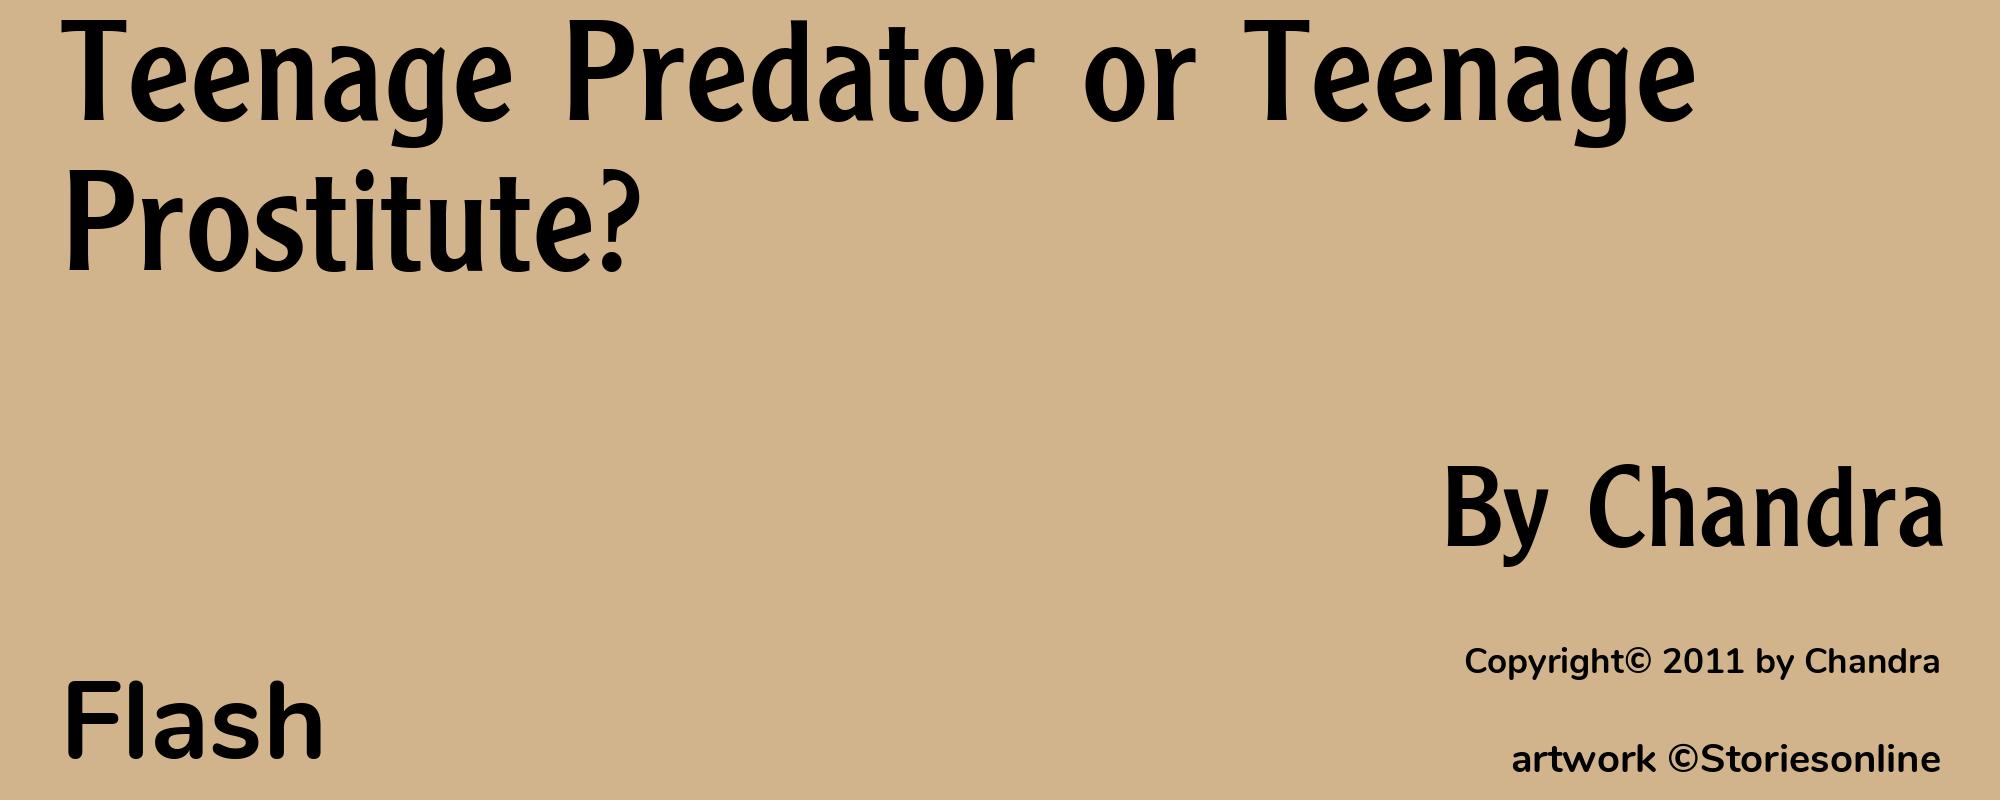 Teenage Predator or Teenage Prostitute? - Cover